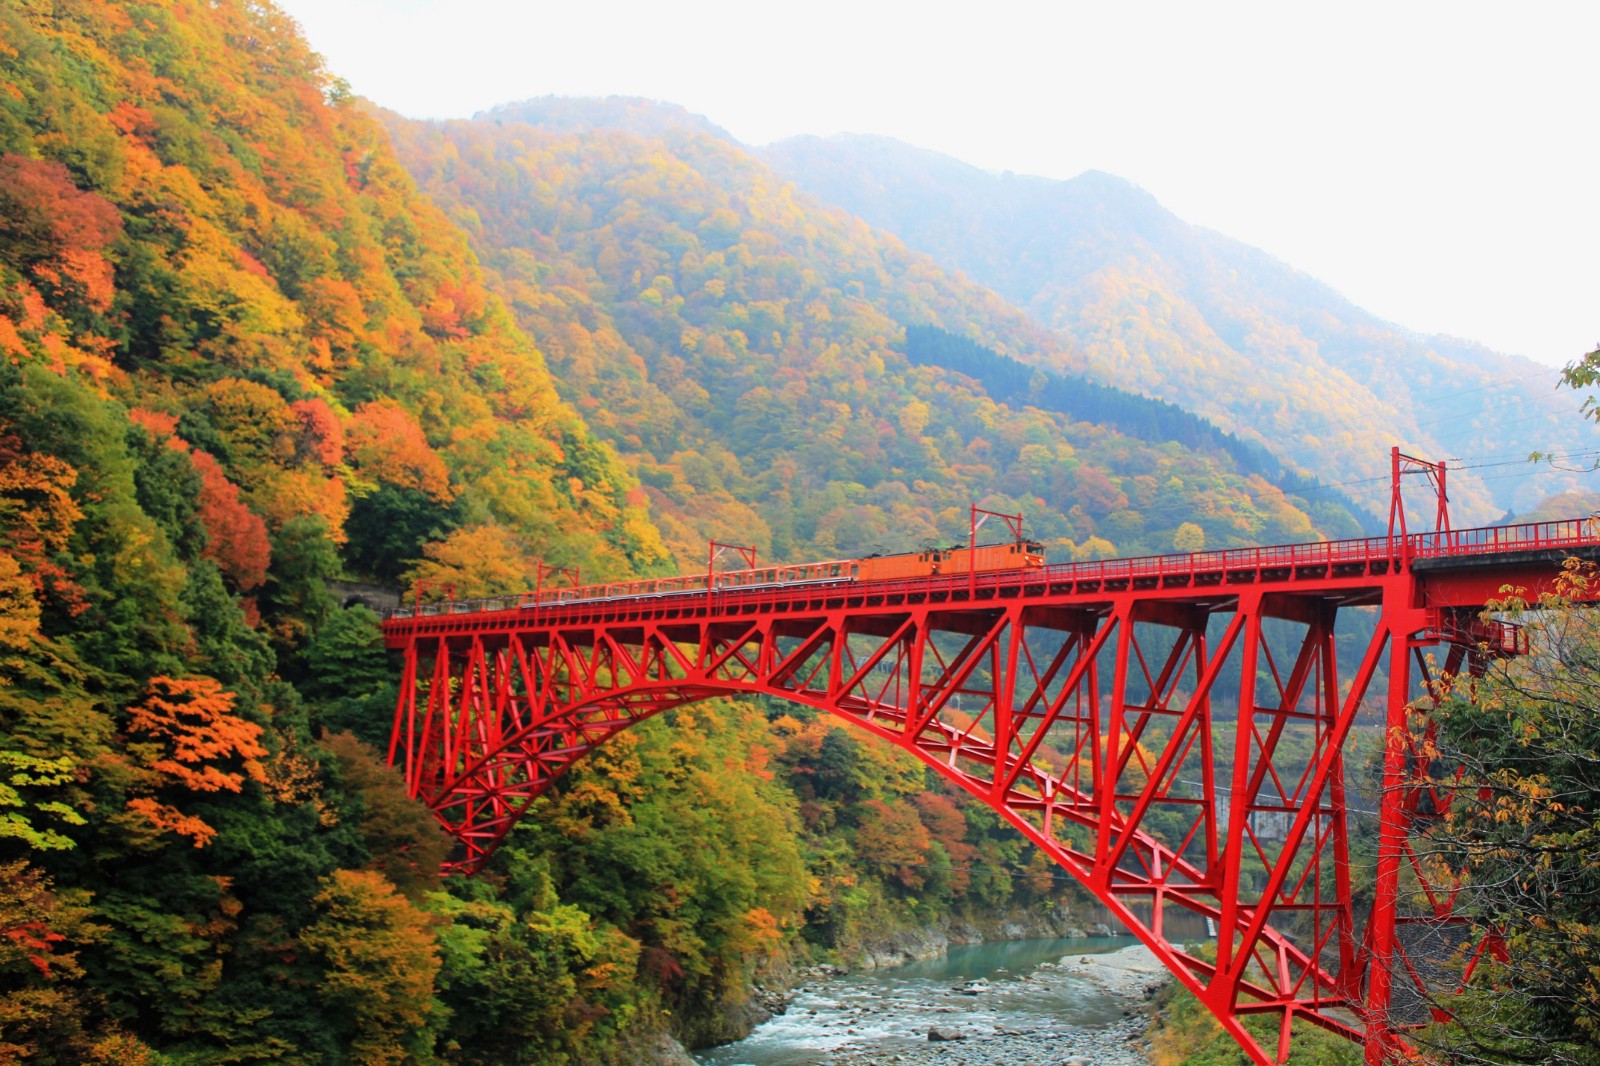 Best Autumn Leaves Spots in Japan